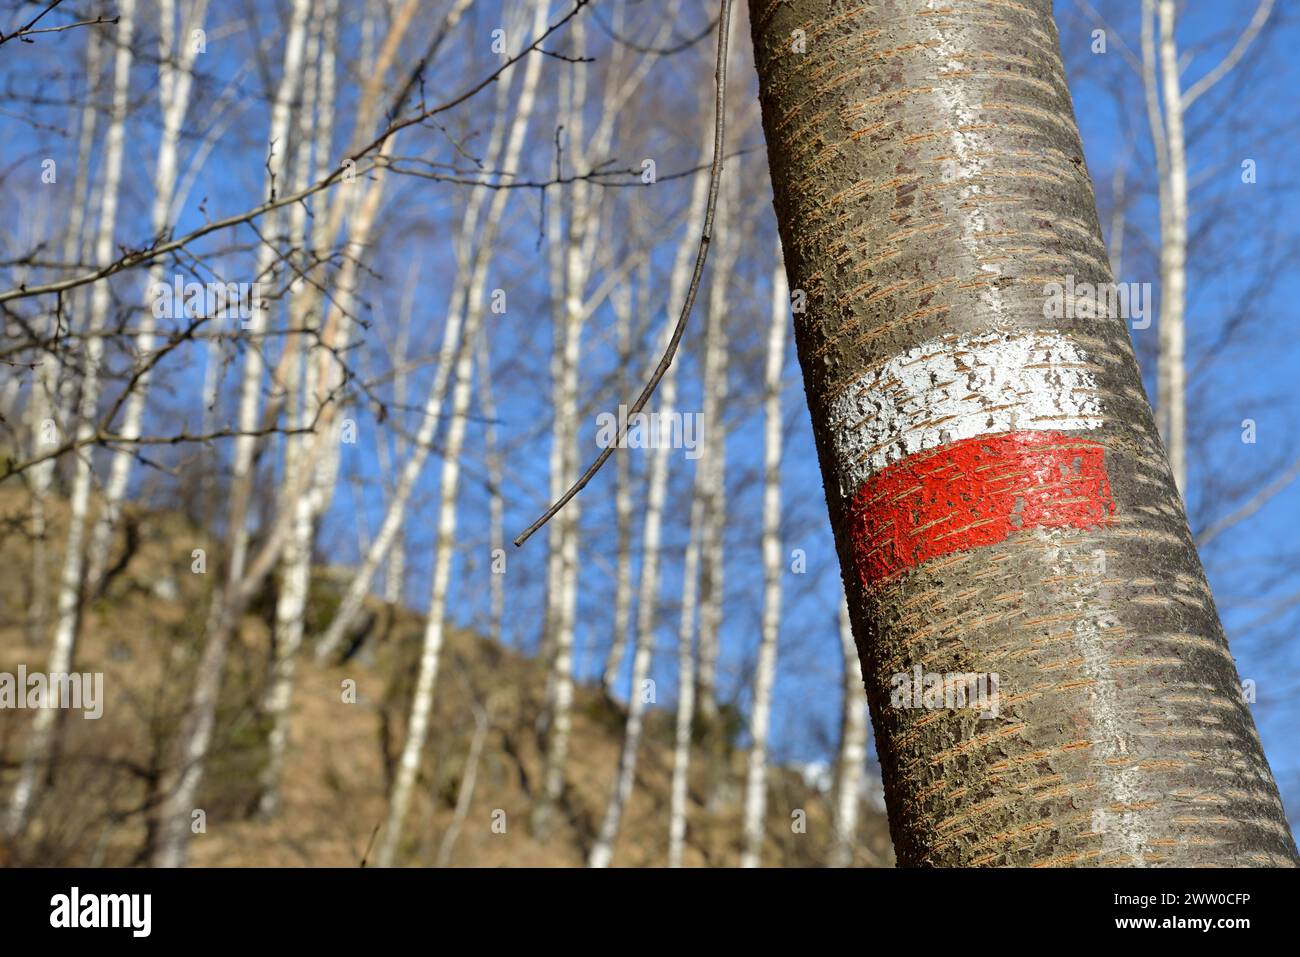 Signe de sentier de randonnée rouge blanc sur un tronc d'arbre - Italie Banque D'Images